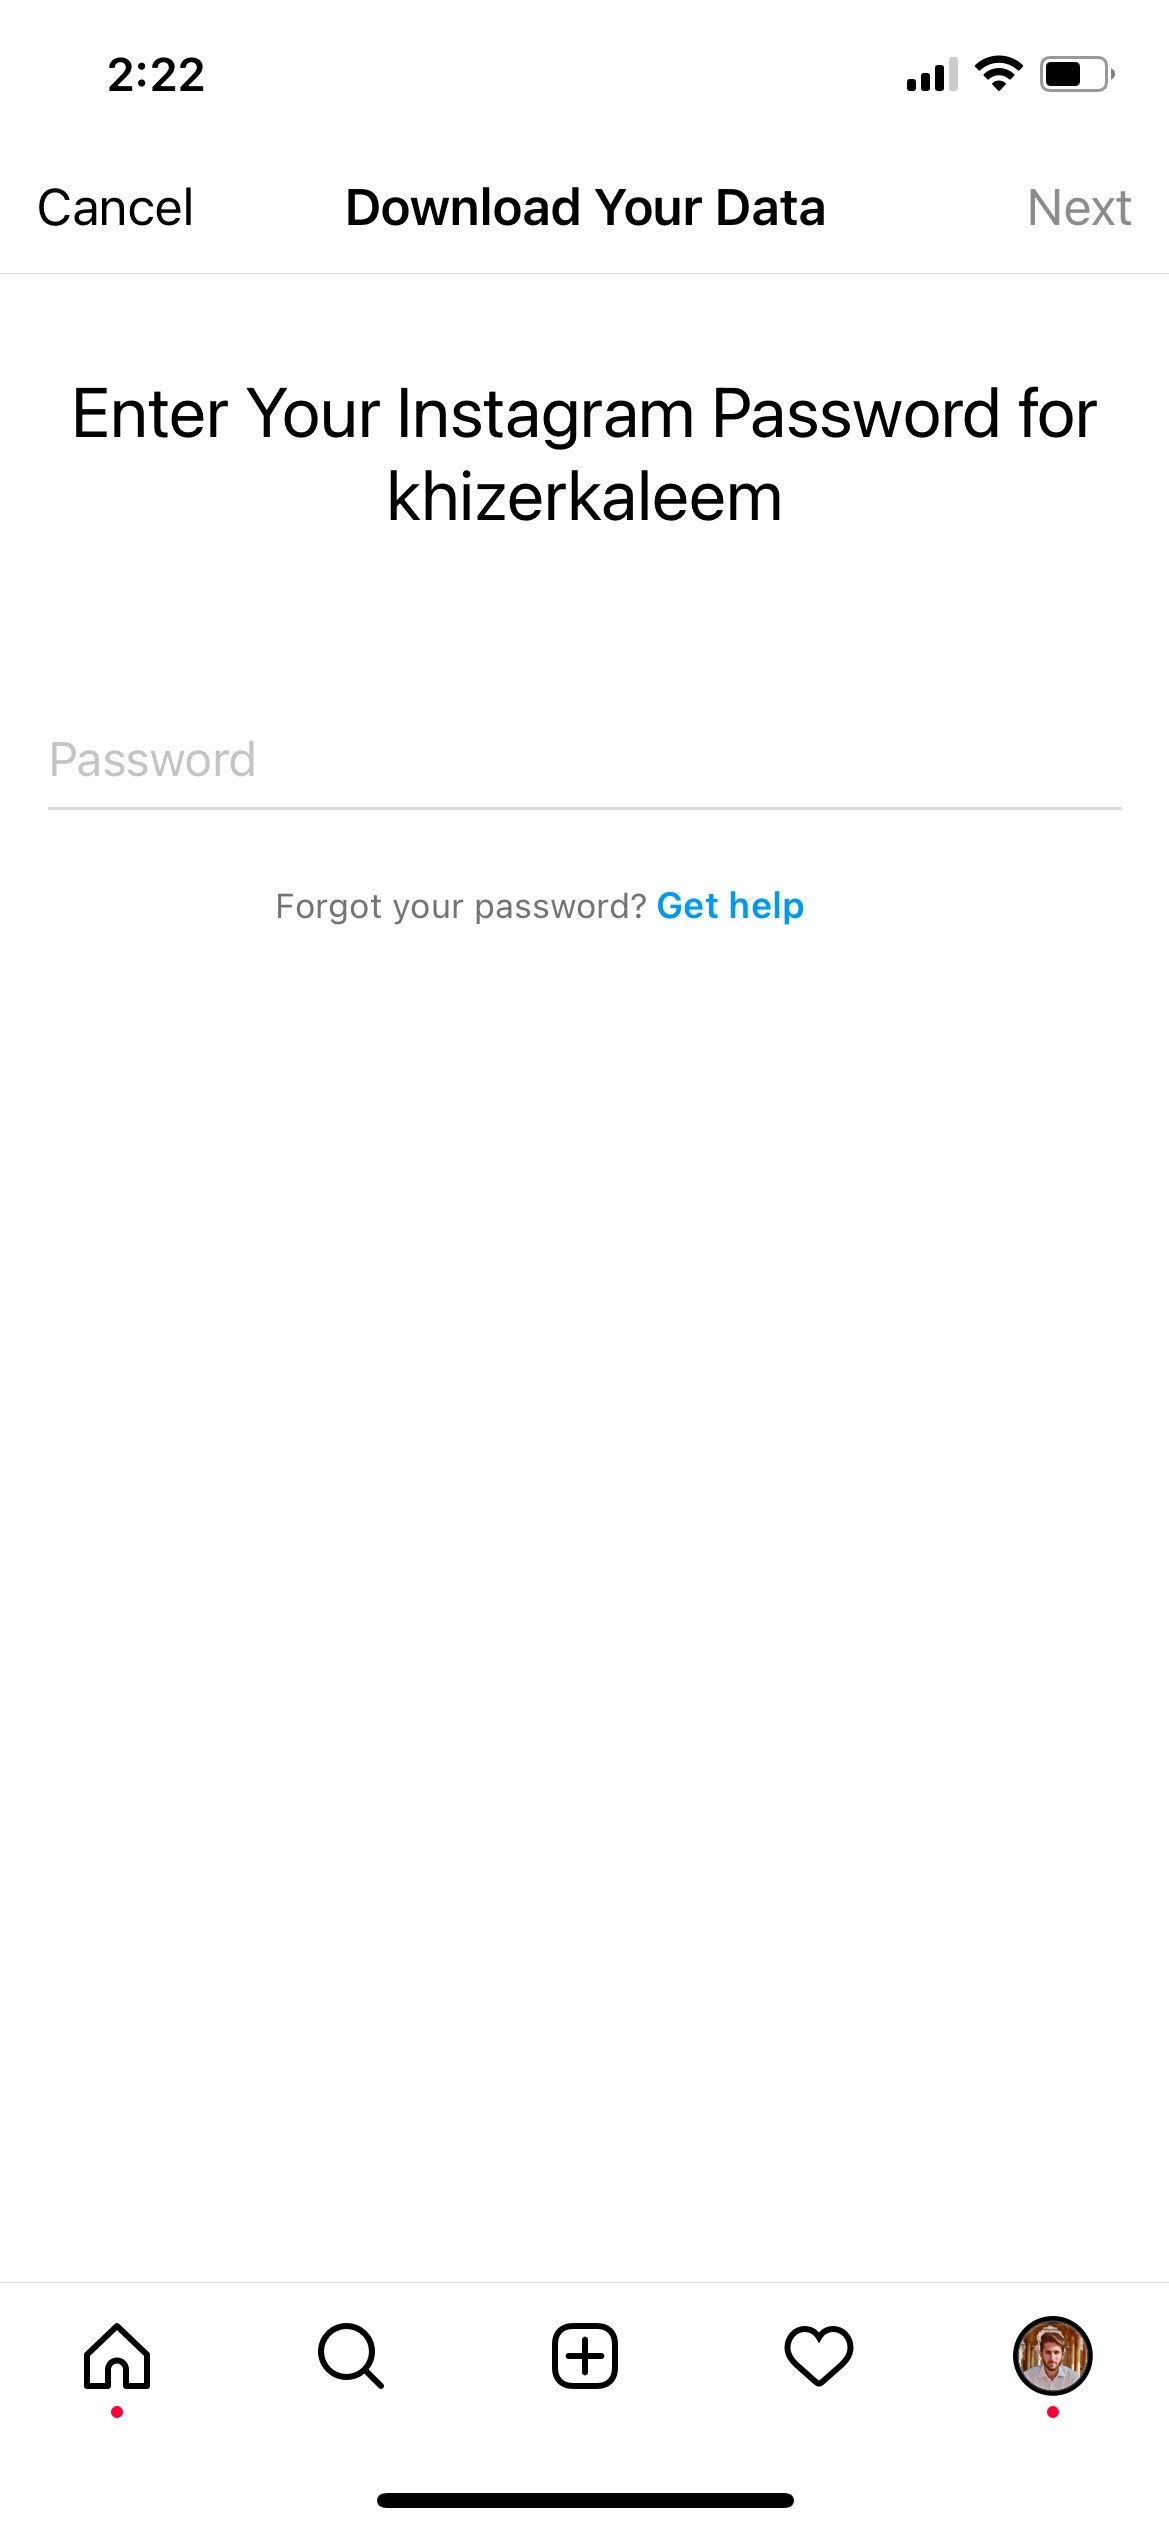 Enter Instagram password